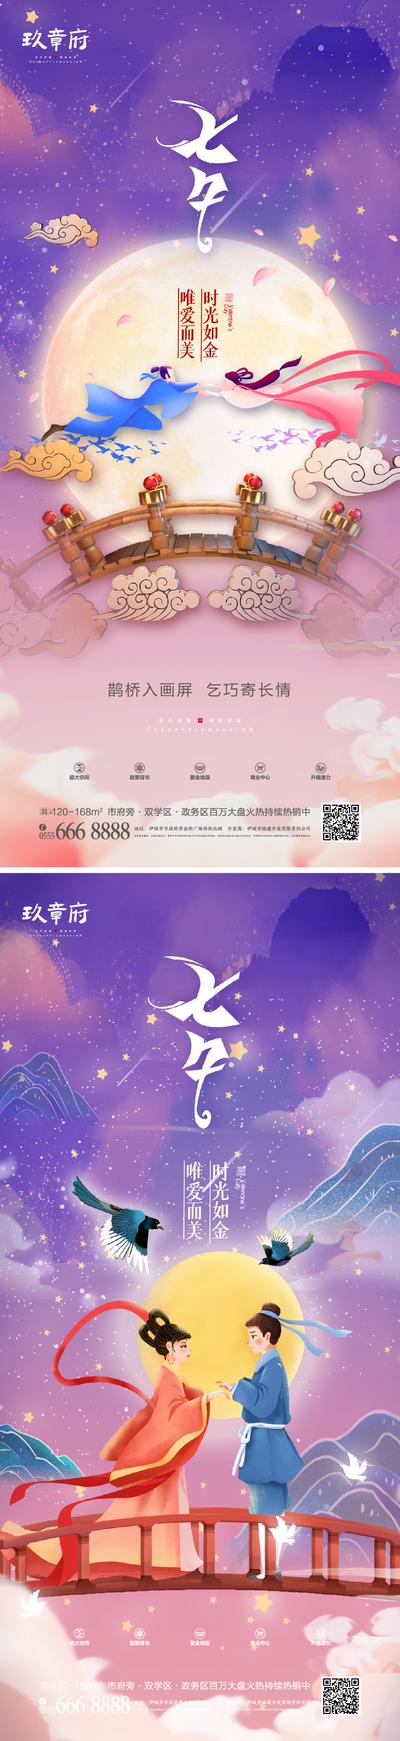 南门网 海报 地产 中国传统节日 七夕节 情人节 鹊桥 月亮 插画